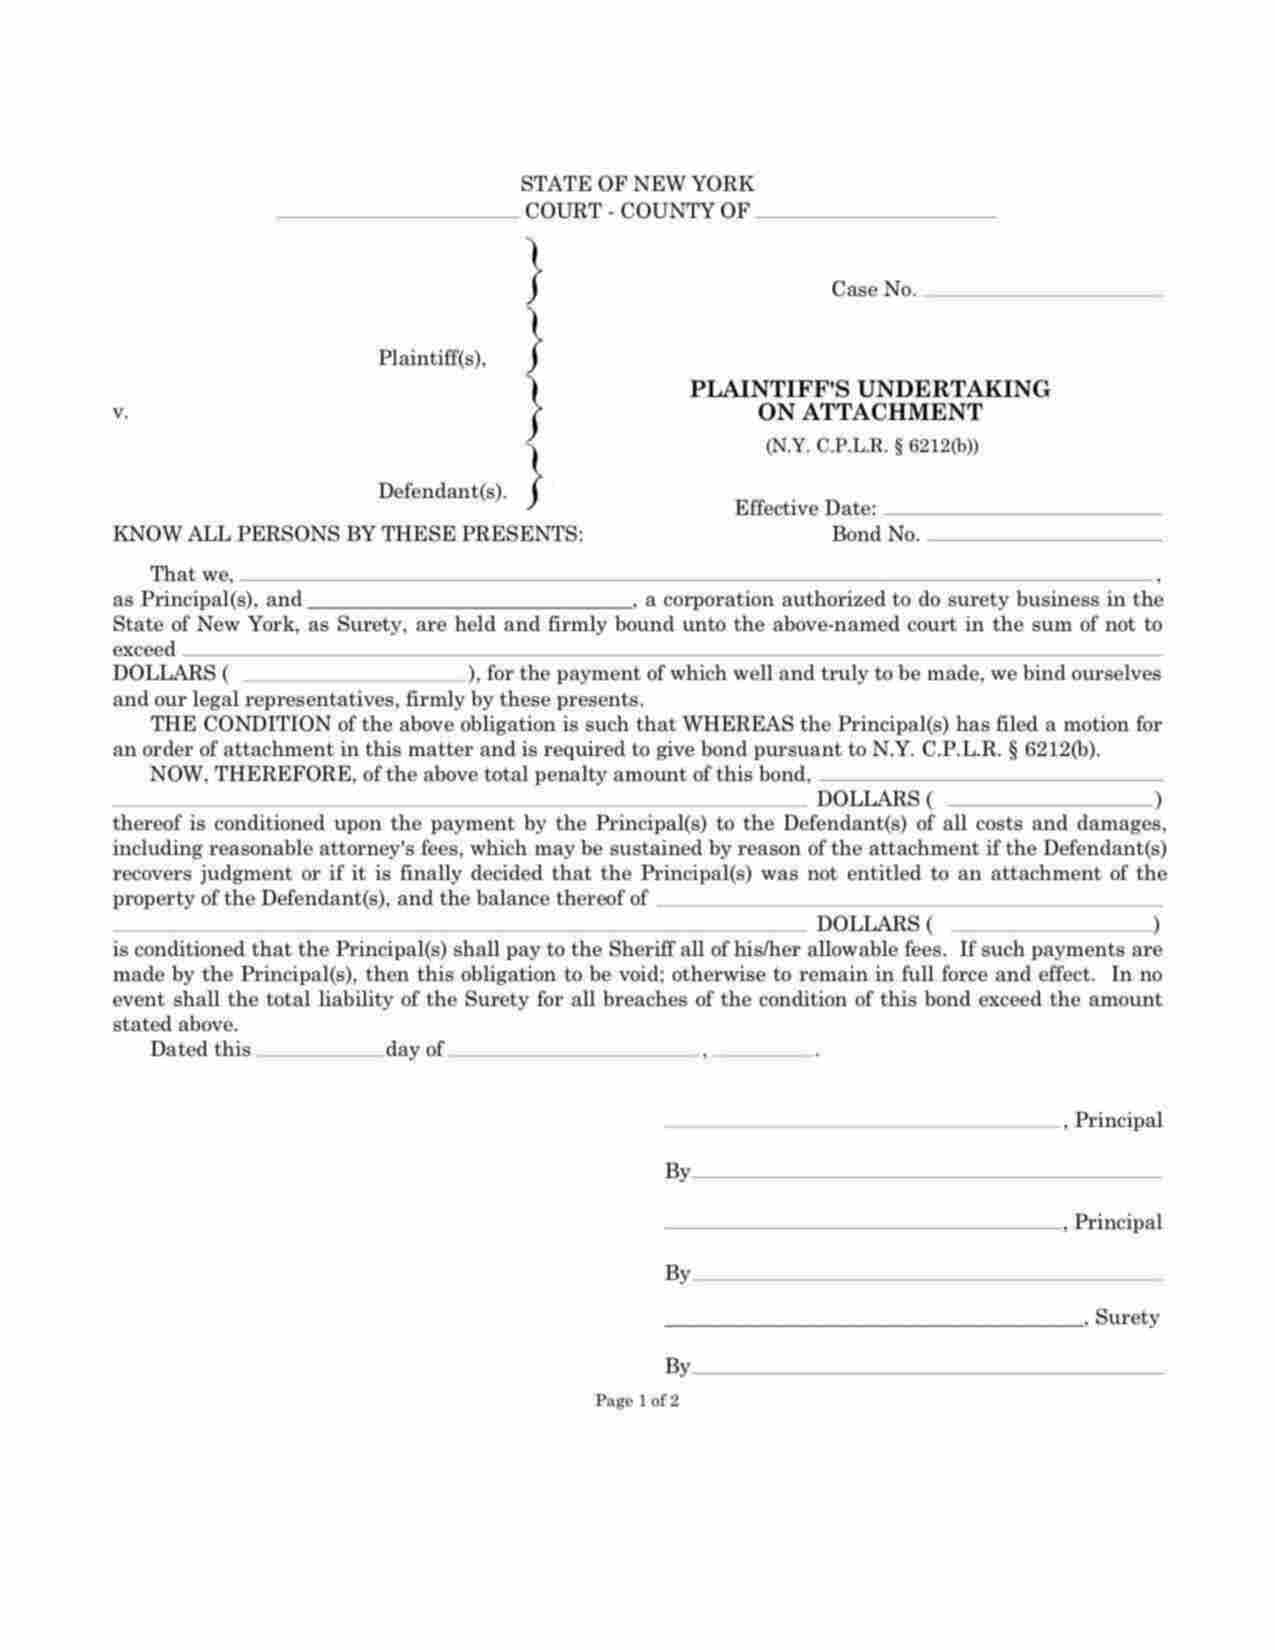 New York Plaintiffs Undertaking on Attachment Bond Form